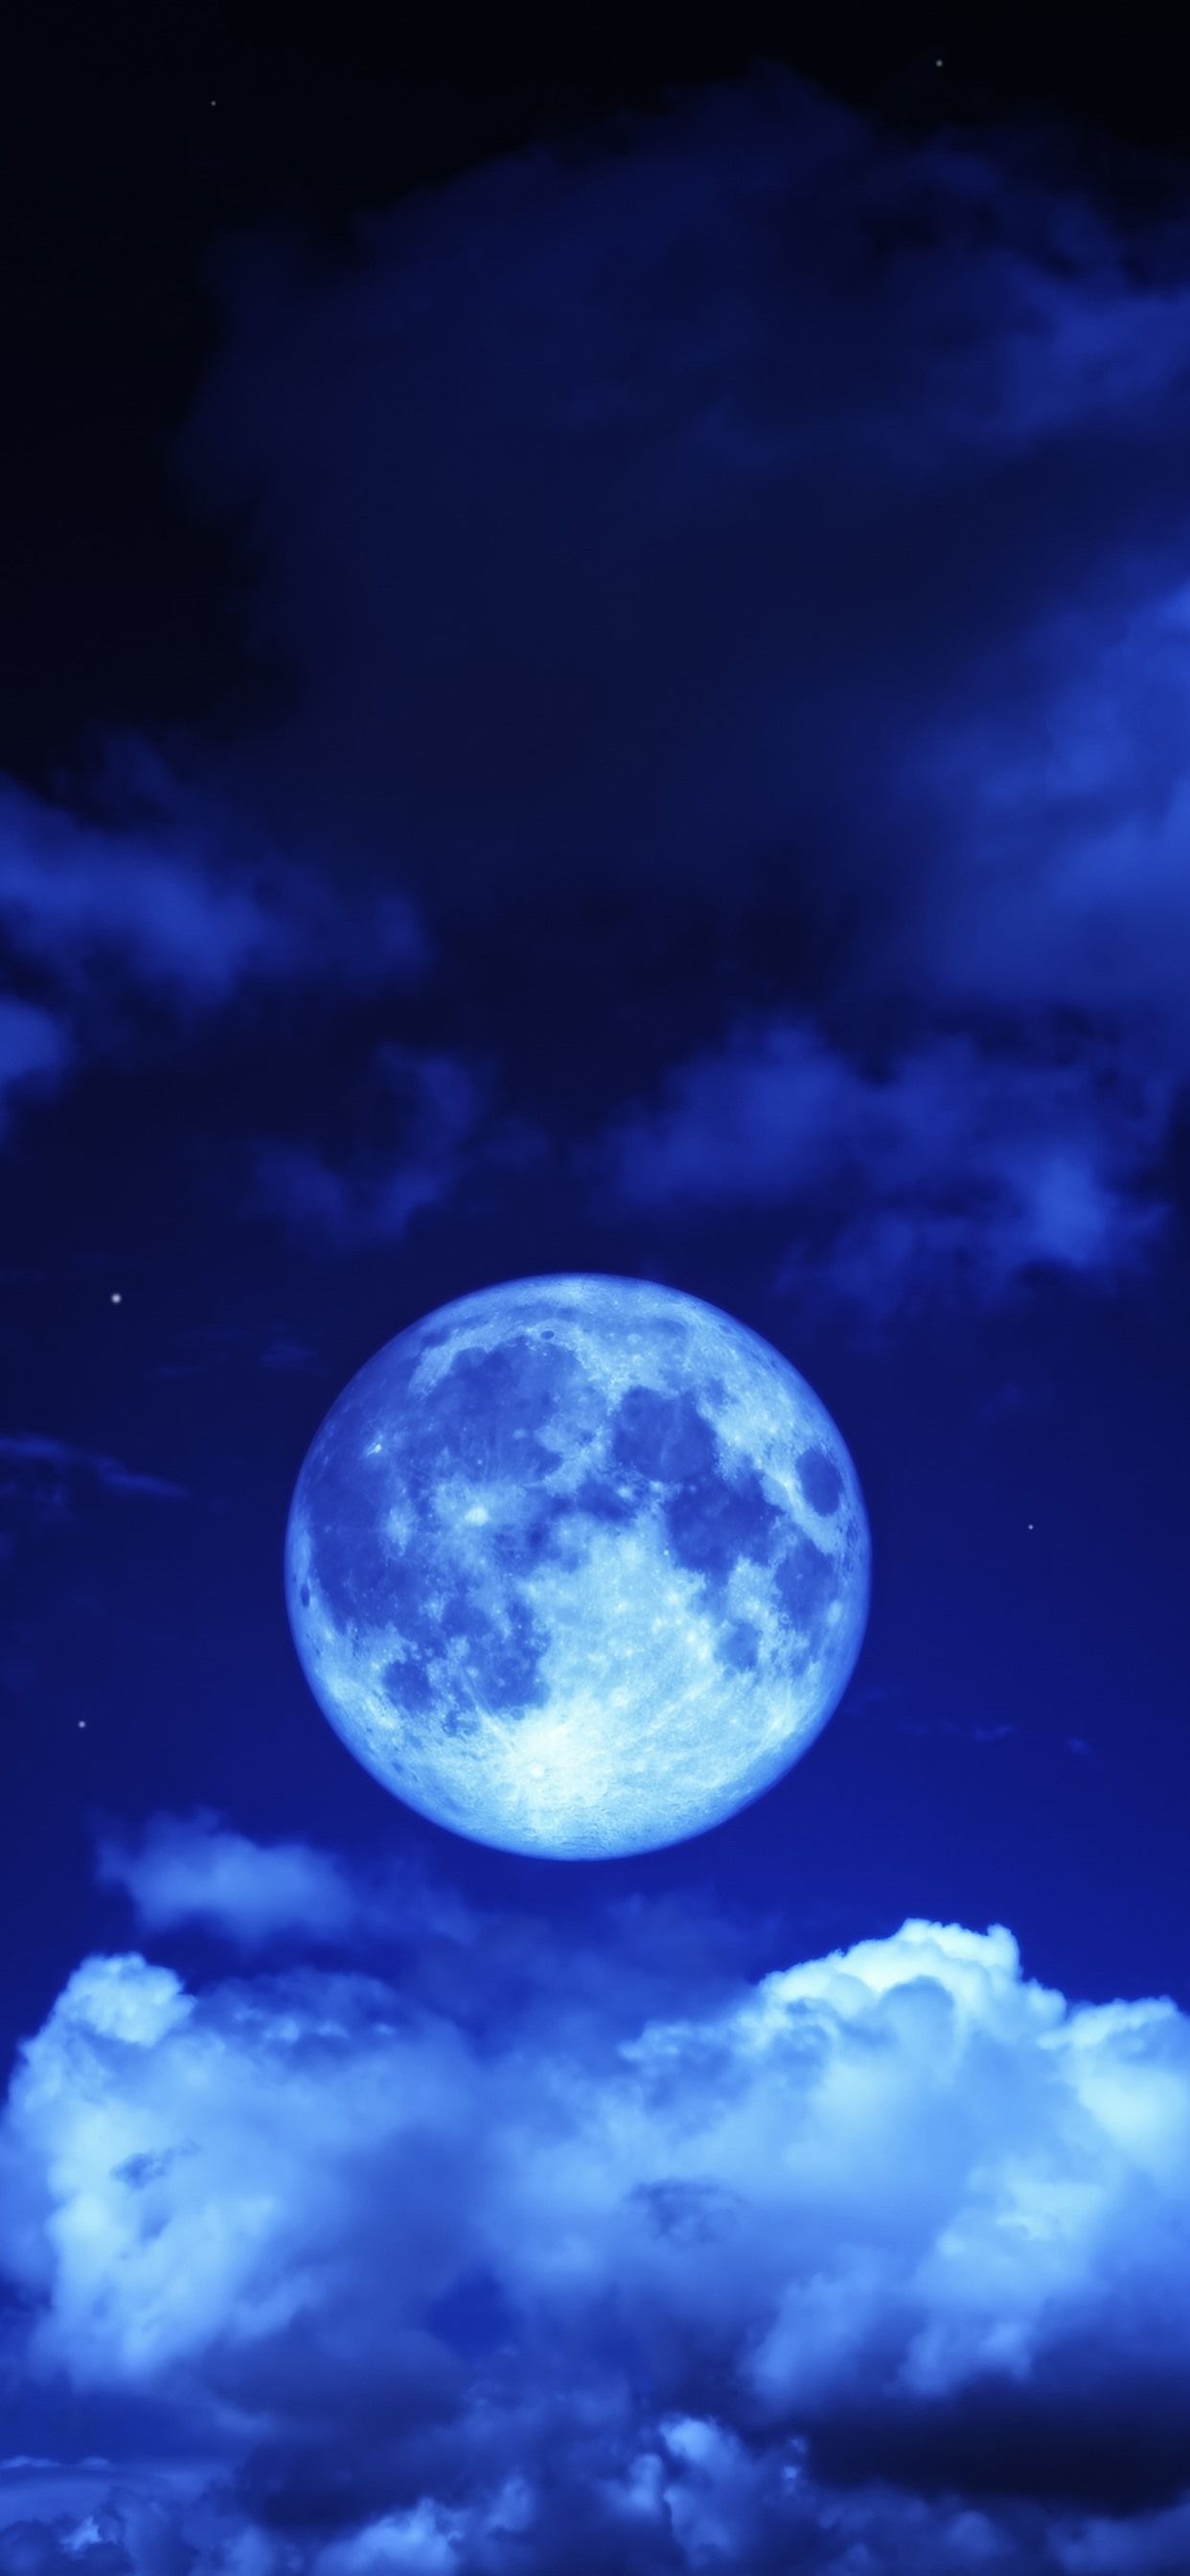  Blaue Hintergrundbild 1242x2688. Mond, Himmel, Wolken, Blau, Nacht 1242x2688 IPhone 11 Pro XS Max Hintergrundbilder, HD, Bild